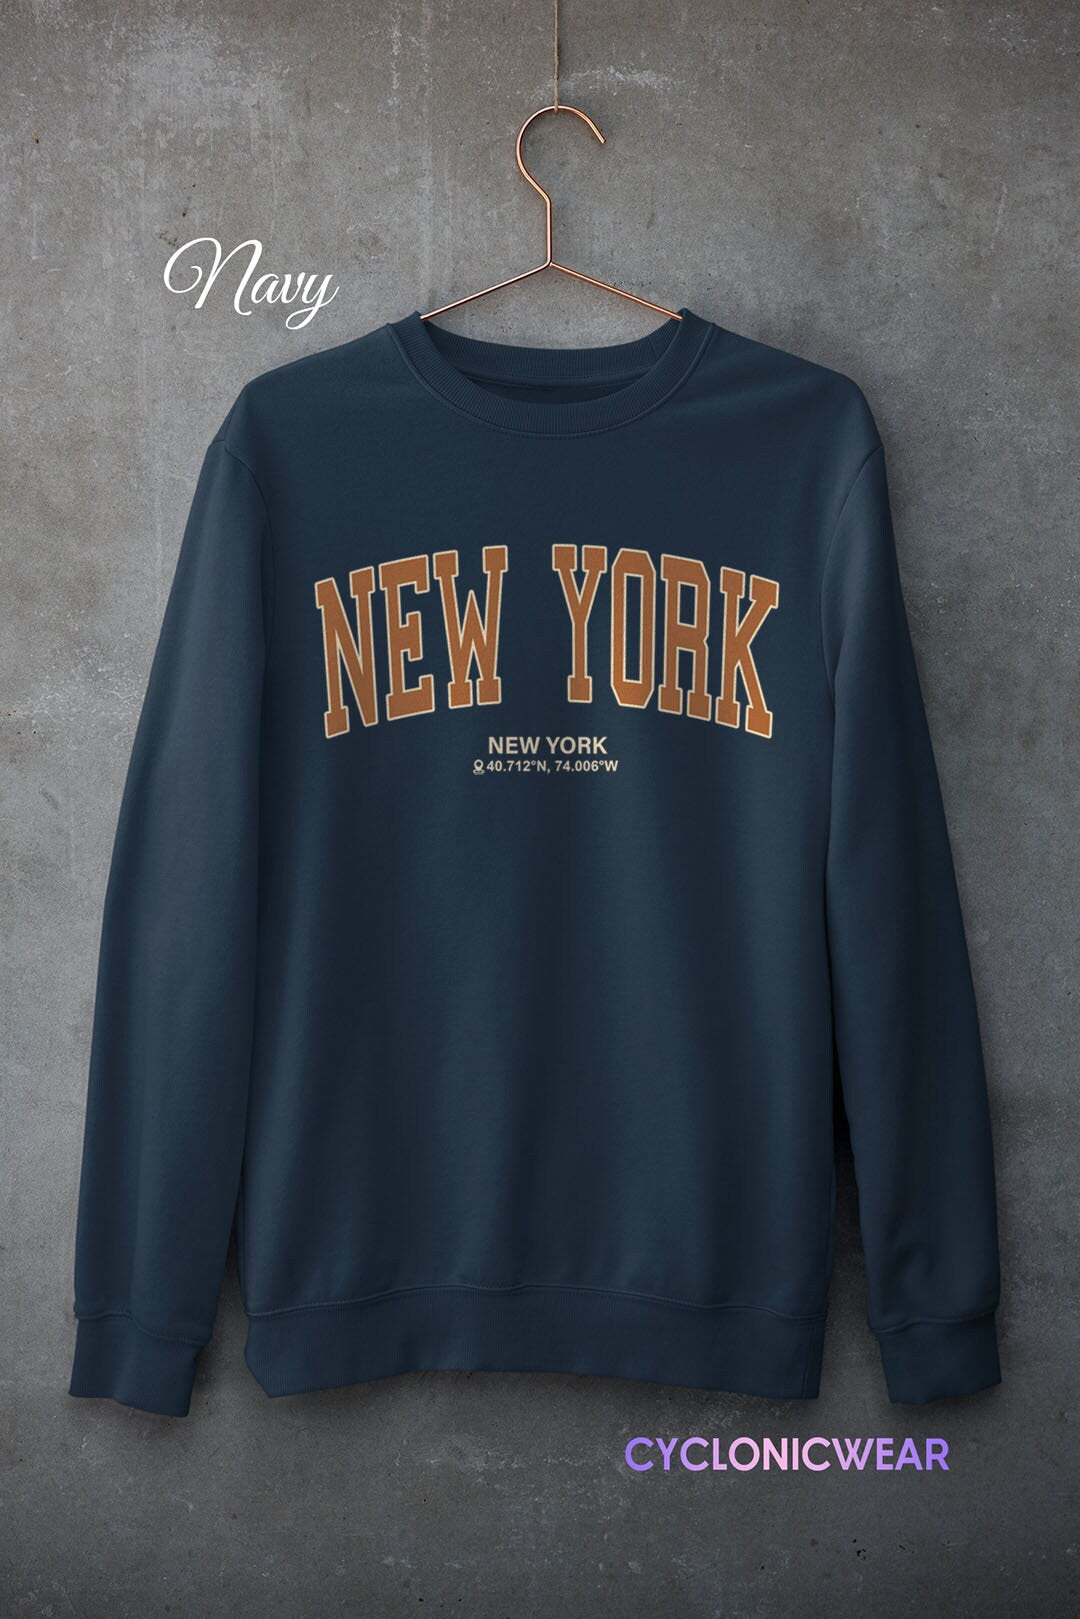 New York College Hoodie, Vintage Style Sweatshirt, New York Fan